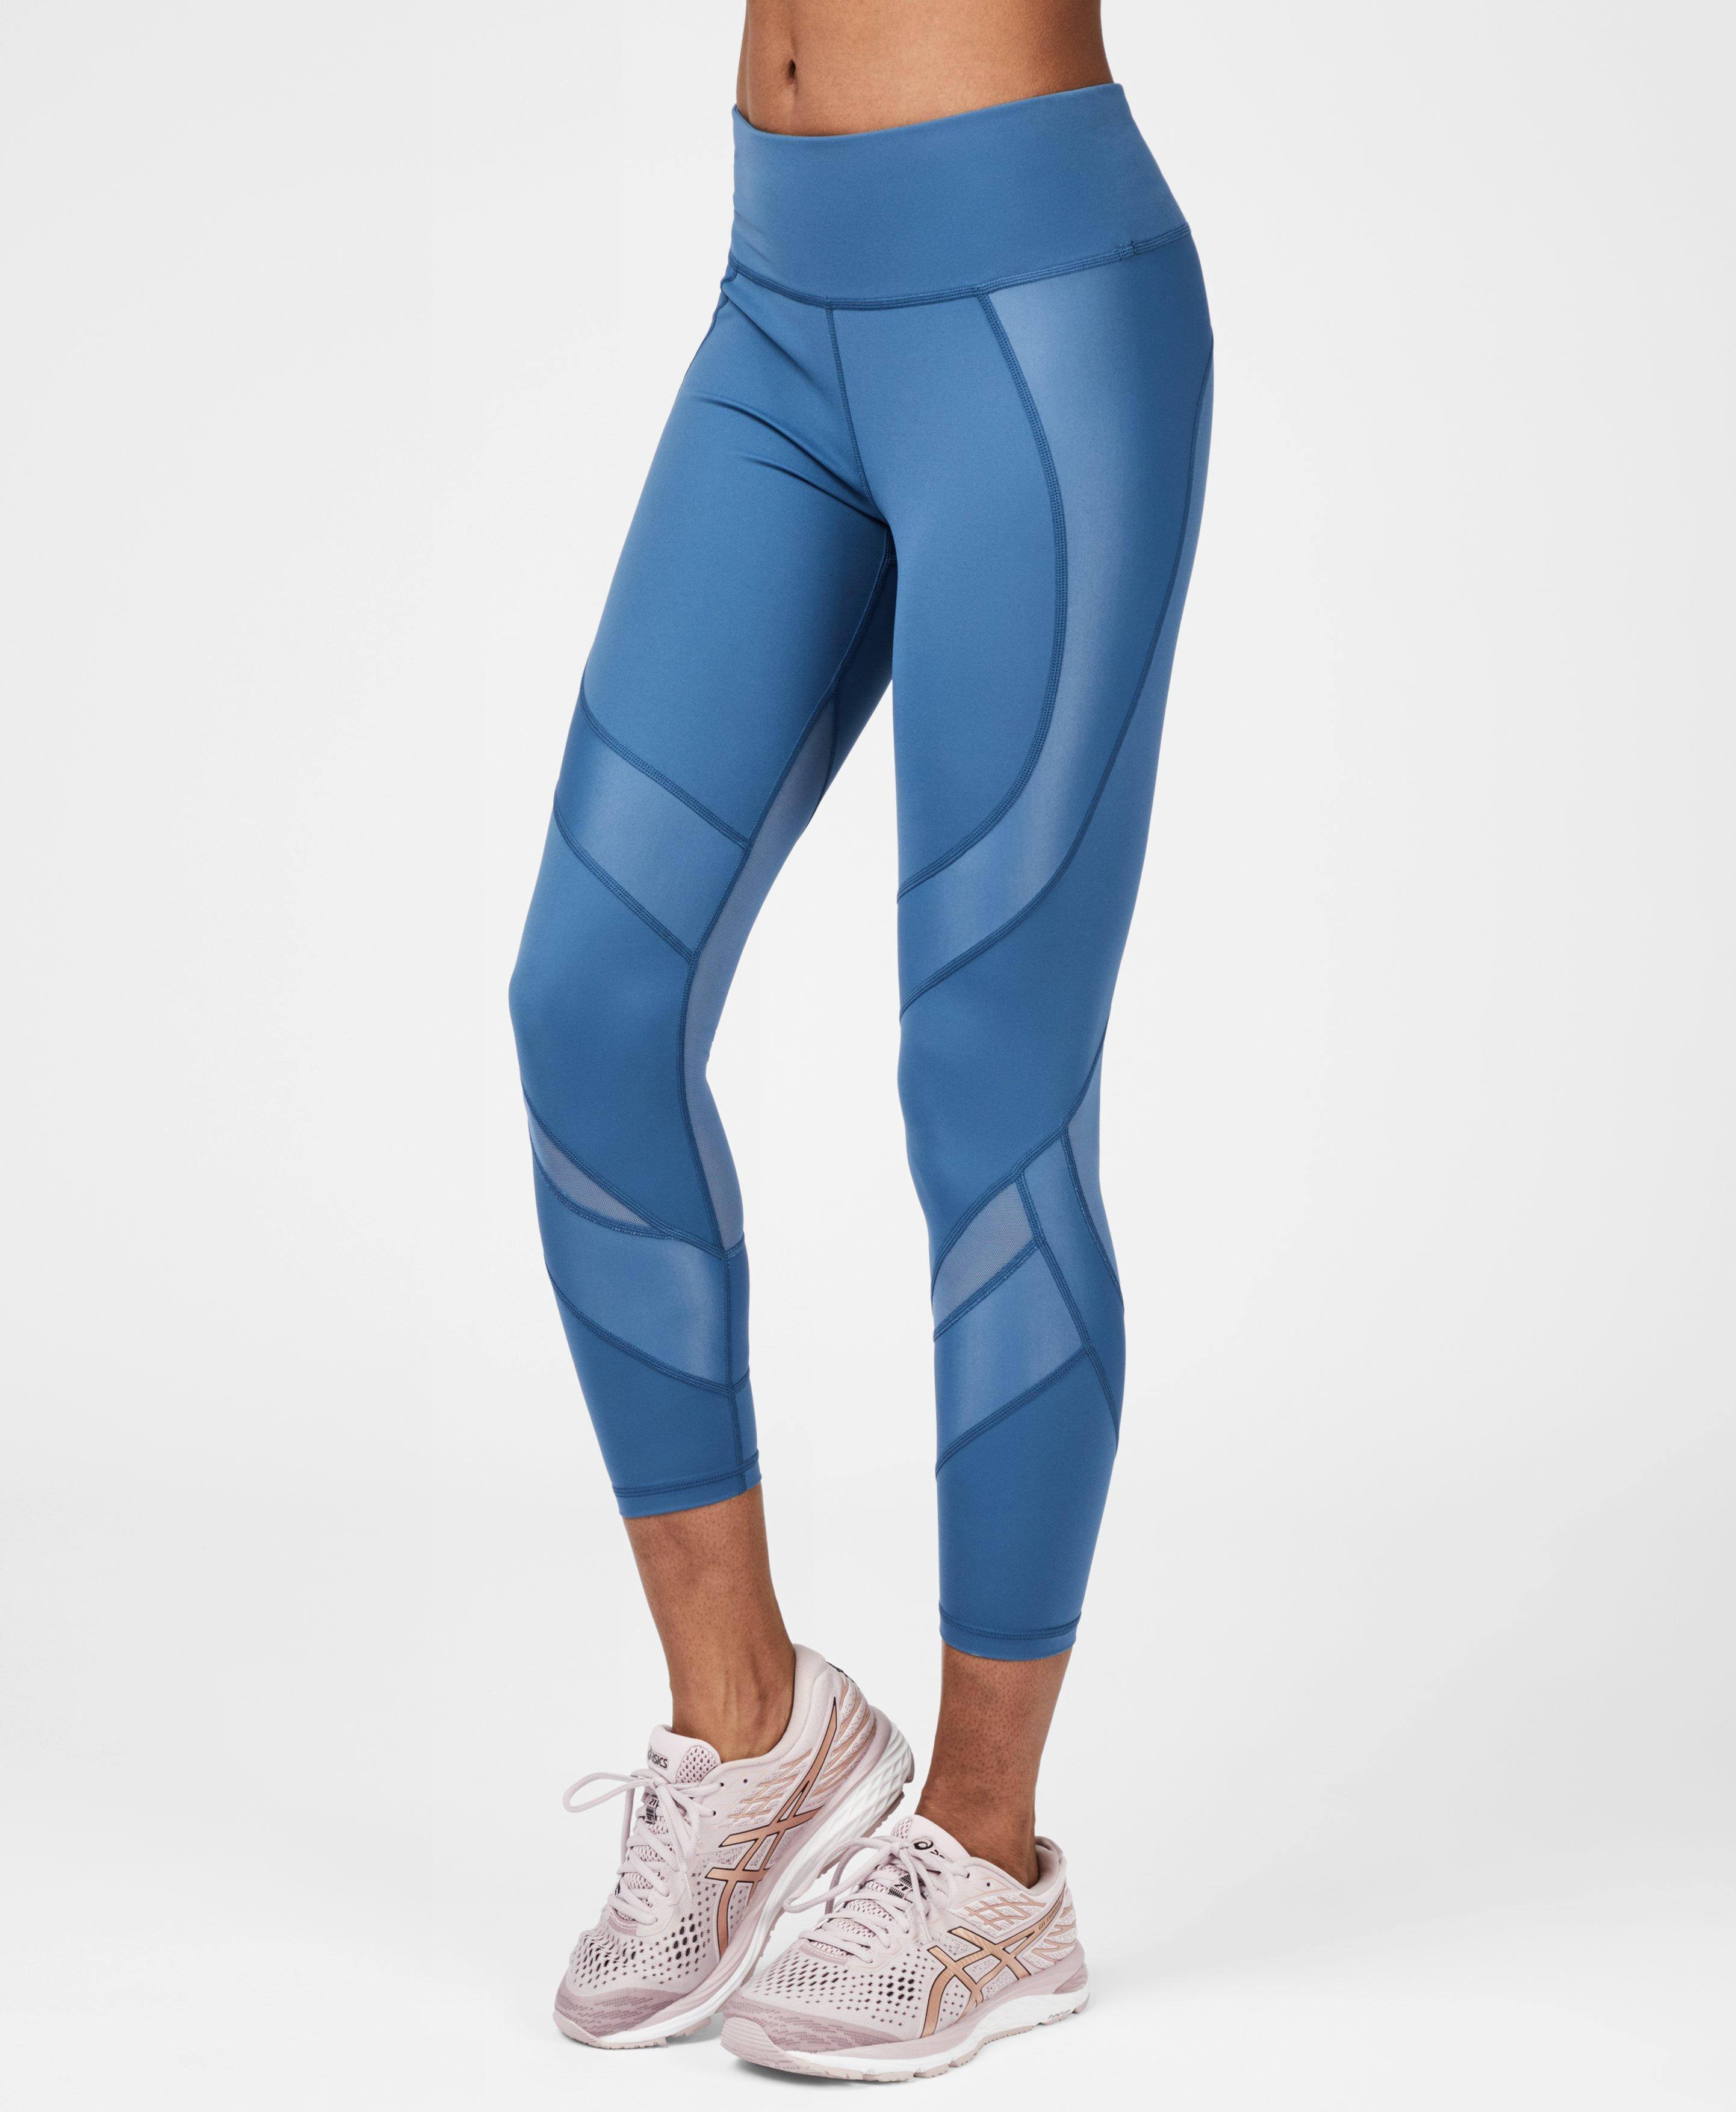 Sweaty Betty Power Mesh 7/8 Workout Leggings in Blue - Lyst